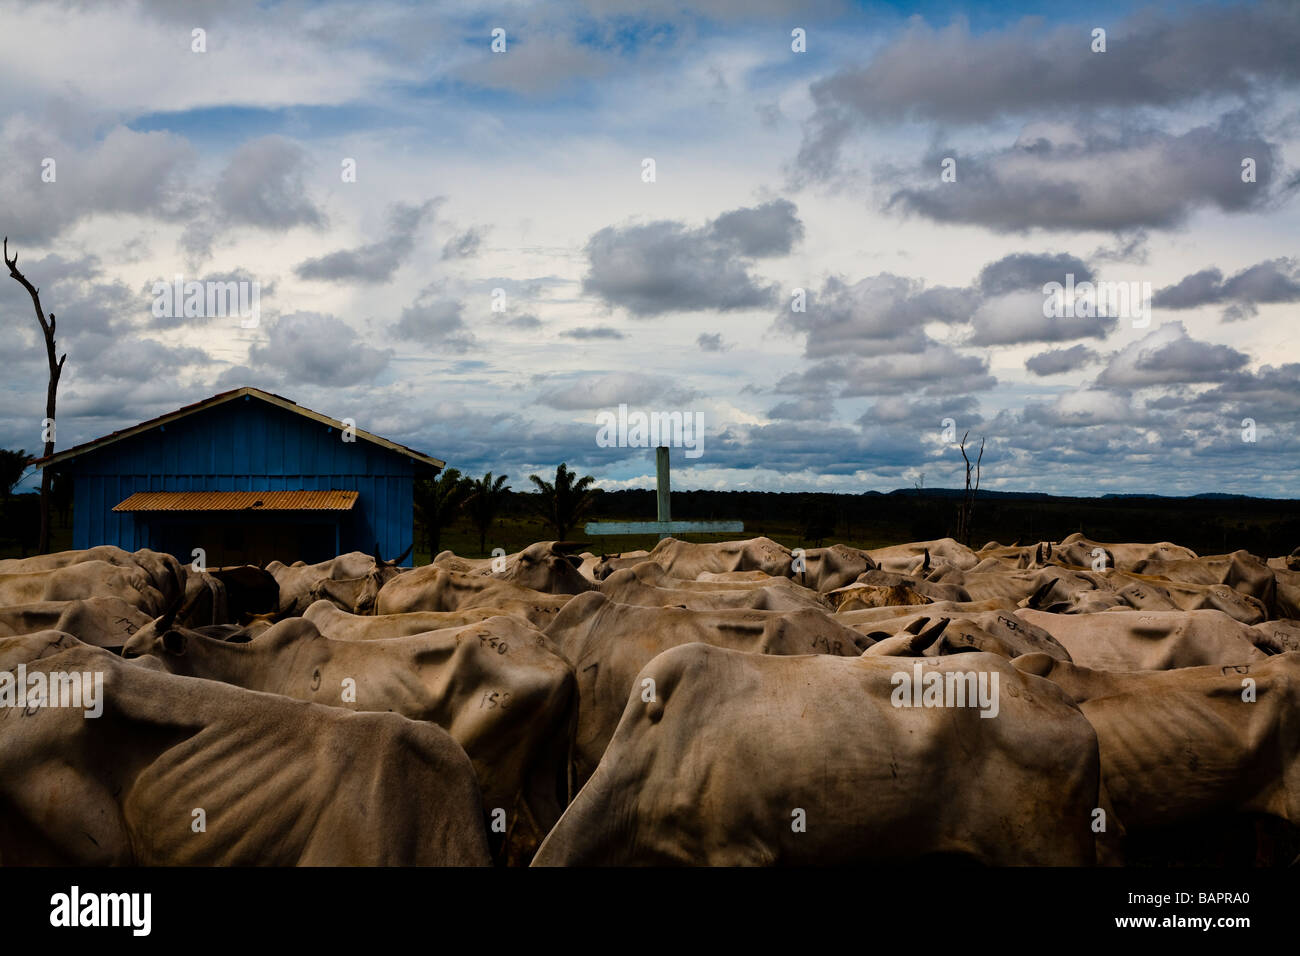 Rebaño bovino BR 163 road en el sur del estado de Pará Brasil Amazonas Foto de stock